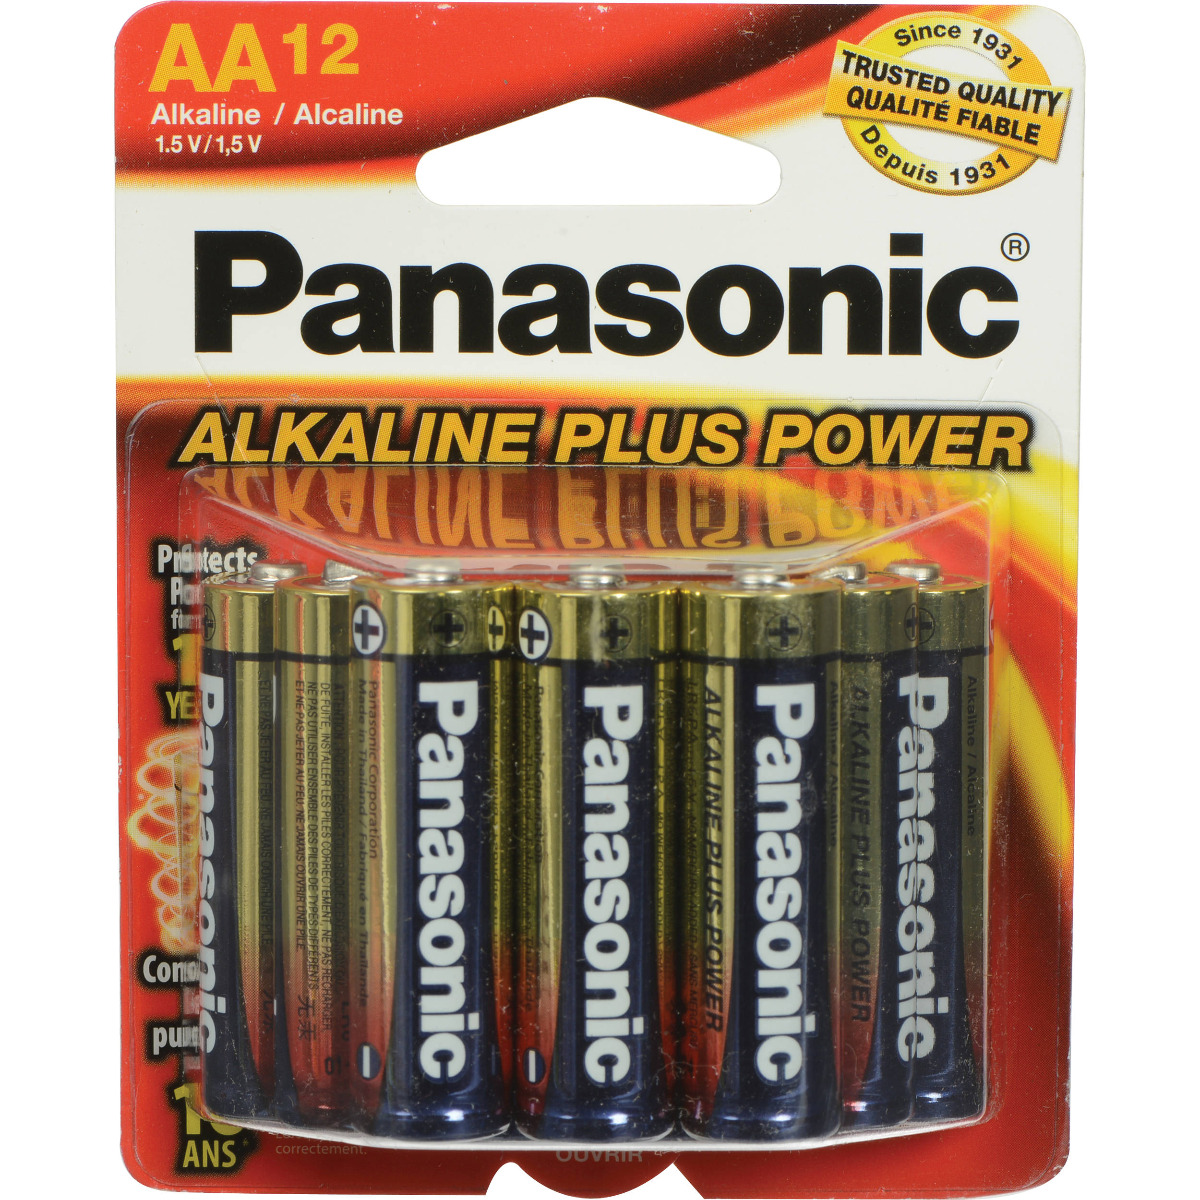 Panasonic AA Alkaline Plus Power Battery, AM-3PA/12B (12 Pack)